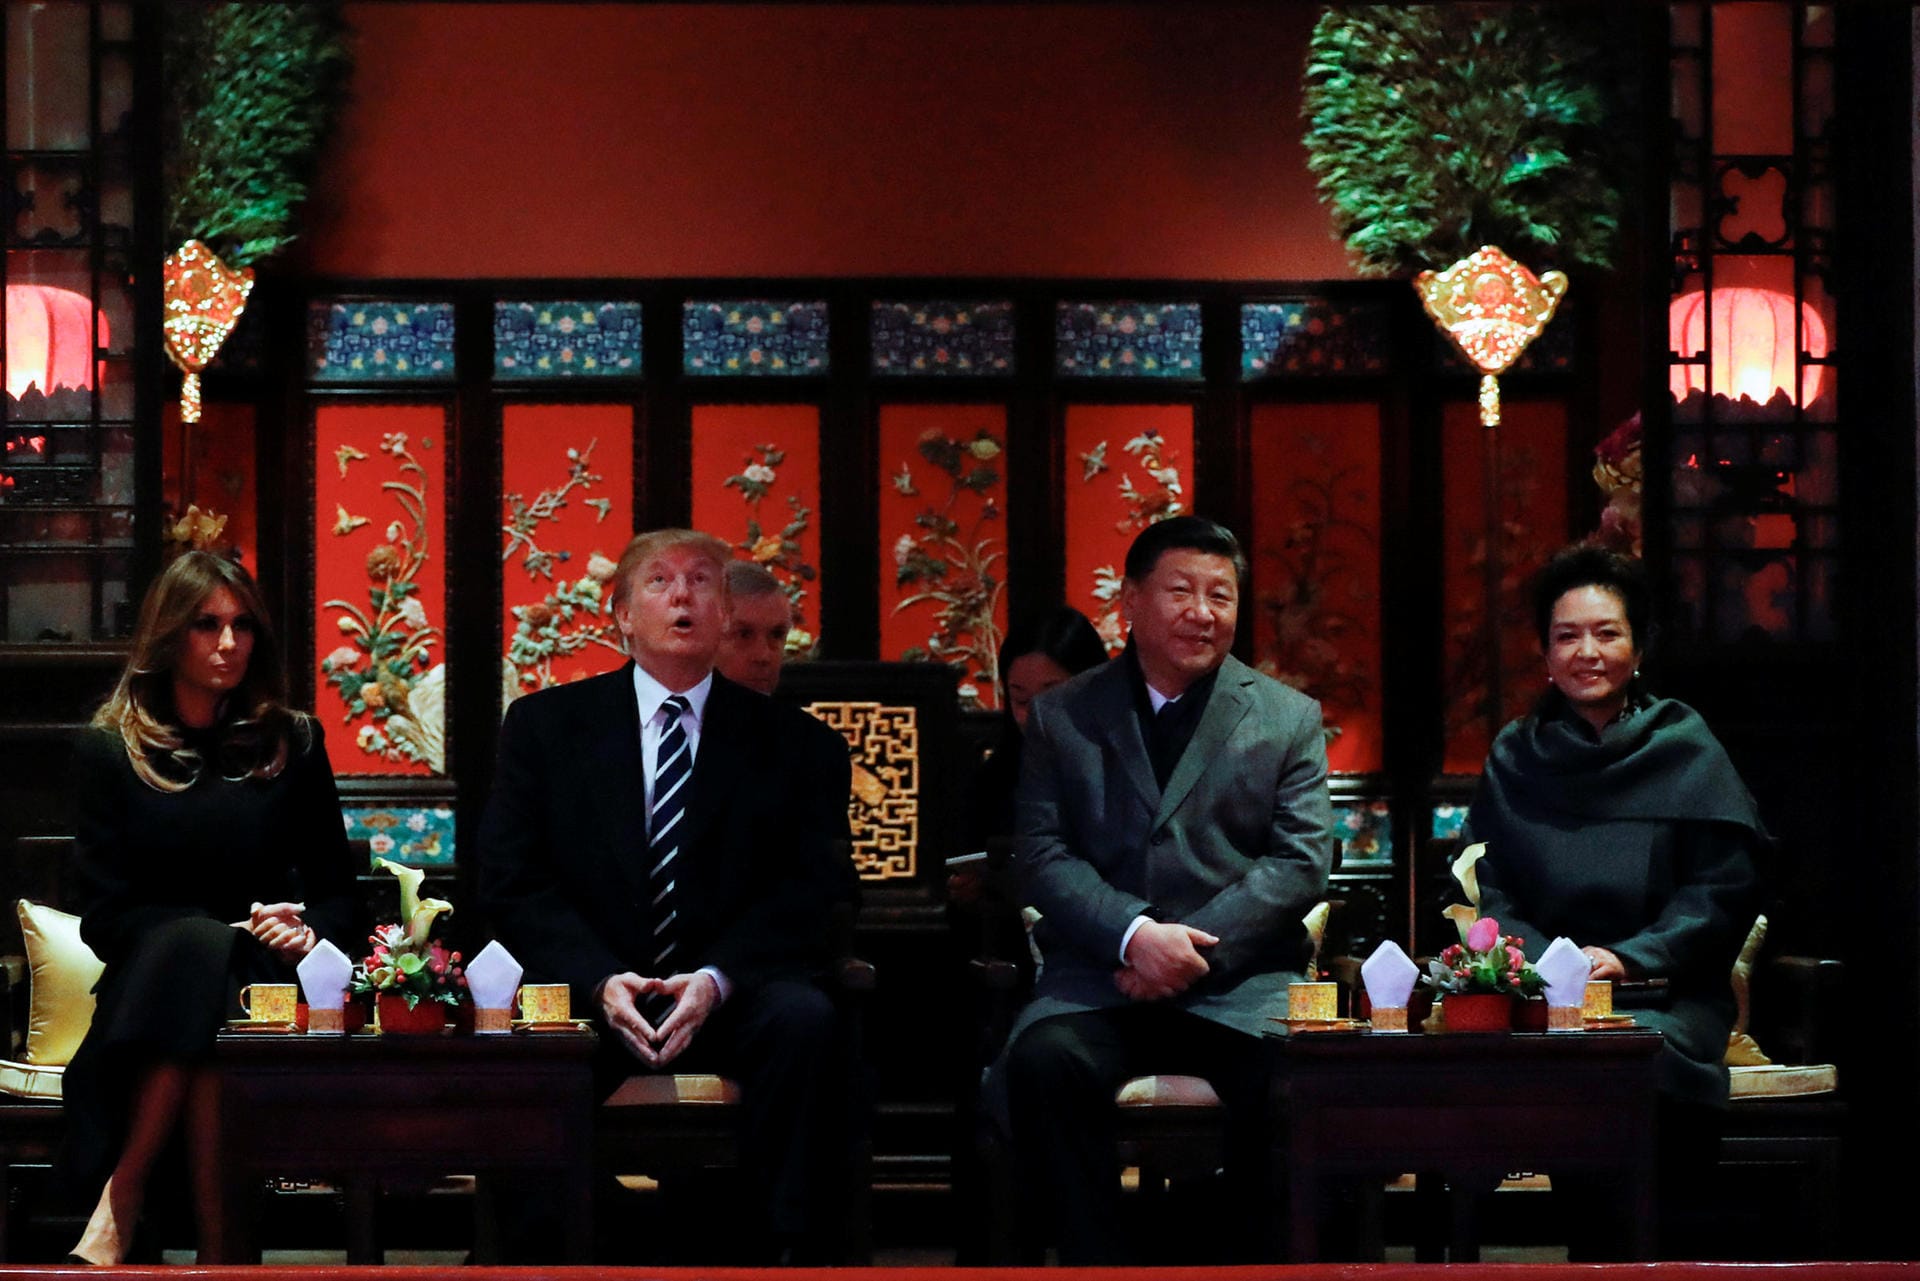 Ganz anders der Tonfall von Trump, als er mit seiner Frau Melania, President Xi und dessen Frau Peng Liyuan eine Oper in der Verbotenen Stadt besucht: Zum Handelsdefizit sagt er nun: "Ich gebe nicht China die Schuld". Wer könne ein Land beschuldigen, wenn es nur den größten Vorteil für sein Volk herausholen wolle.